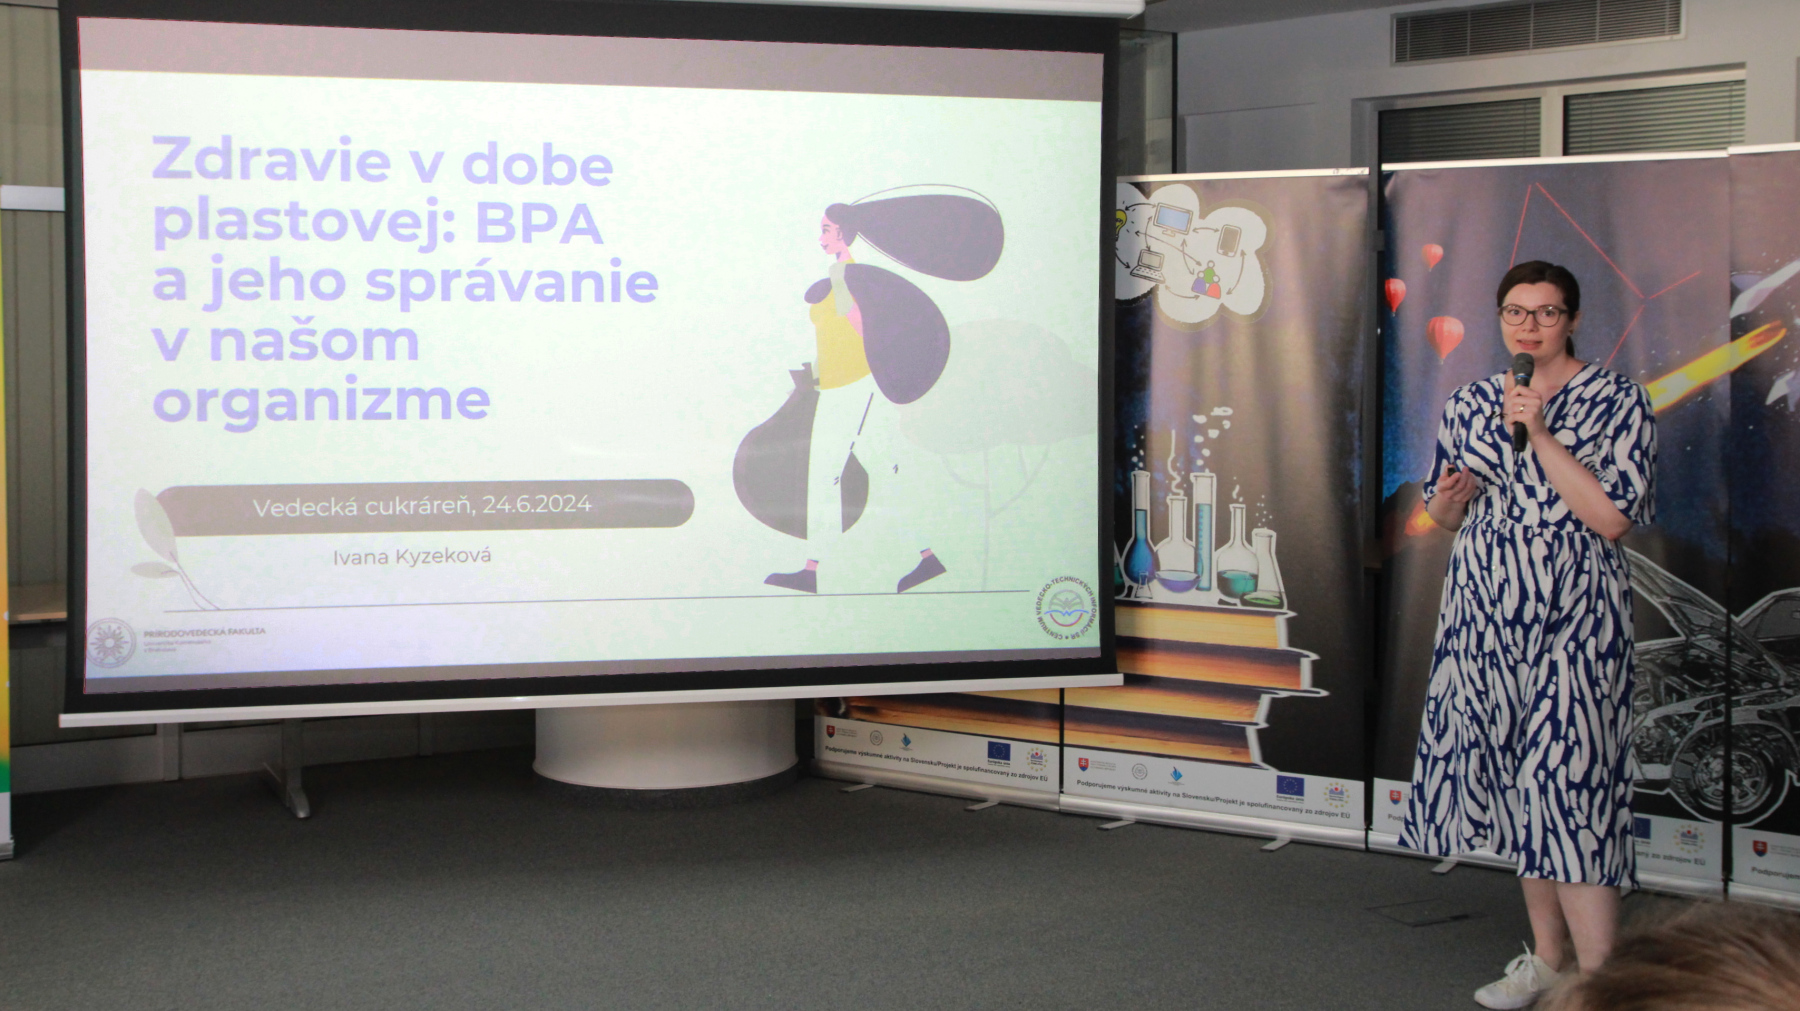 Zdravie v dobe plastovej: BPA a jeho správanie v našom organizme – Mgr. Ivana Kyzeková, PhD.